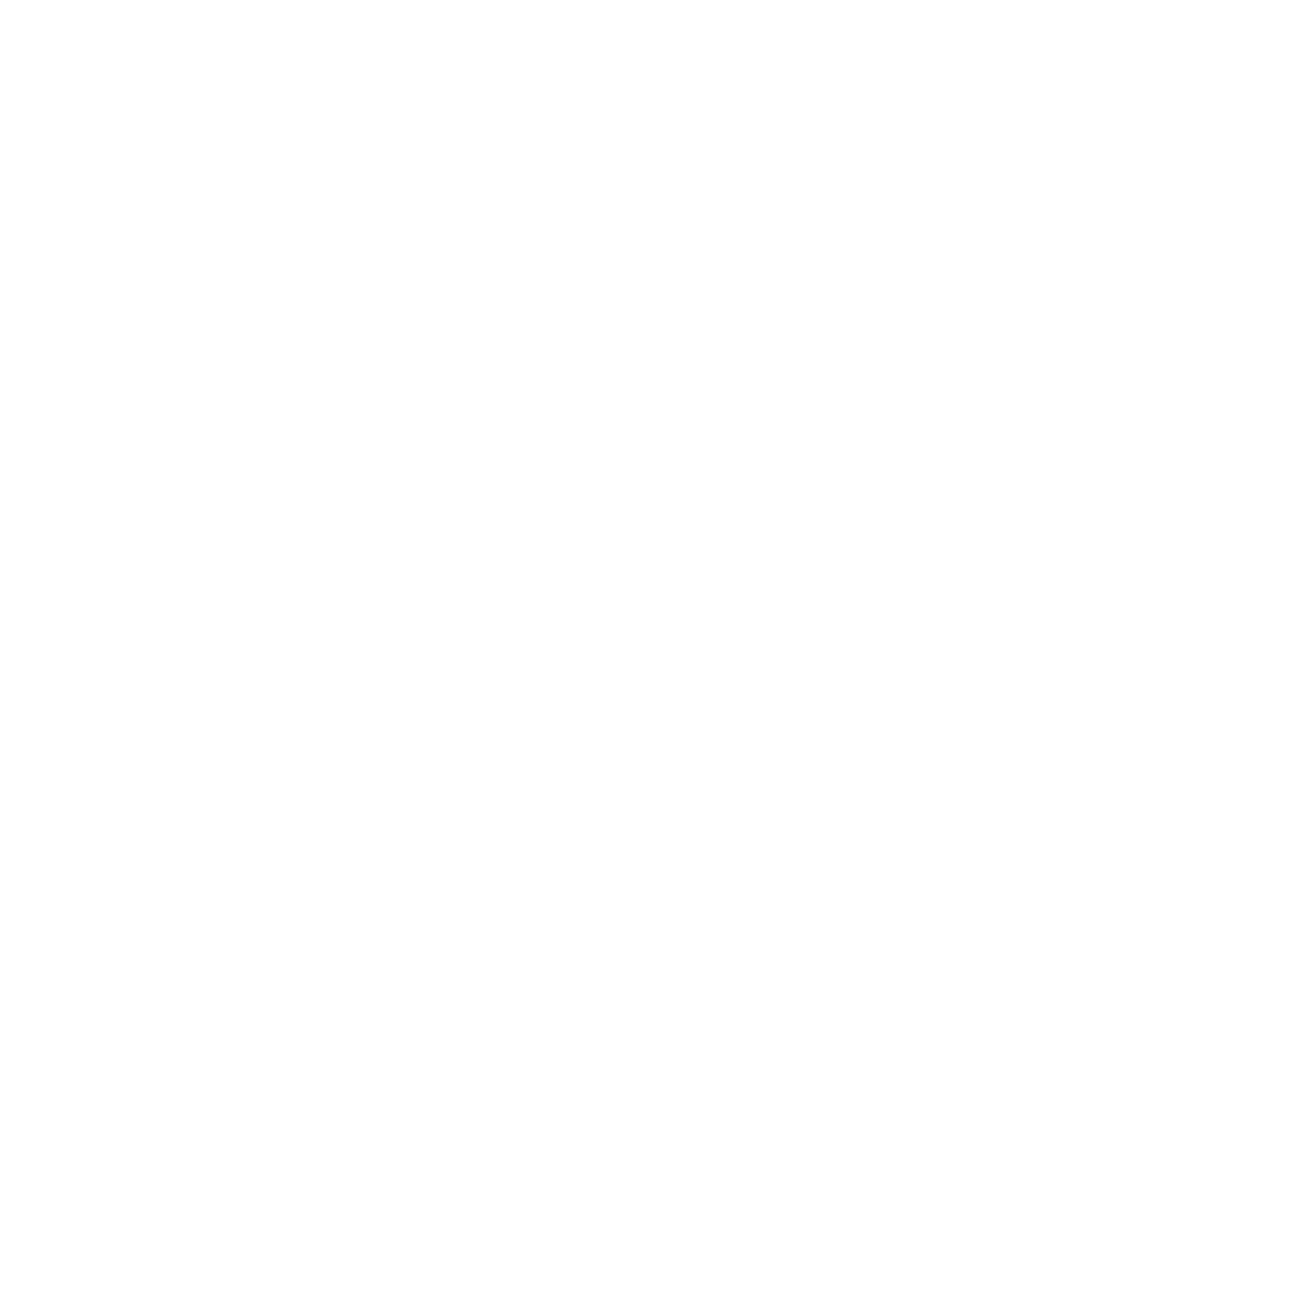 Rachel Boston